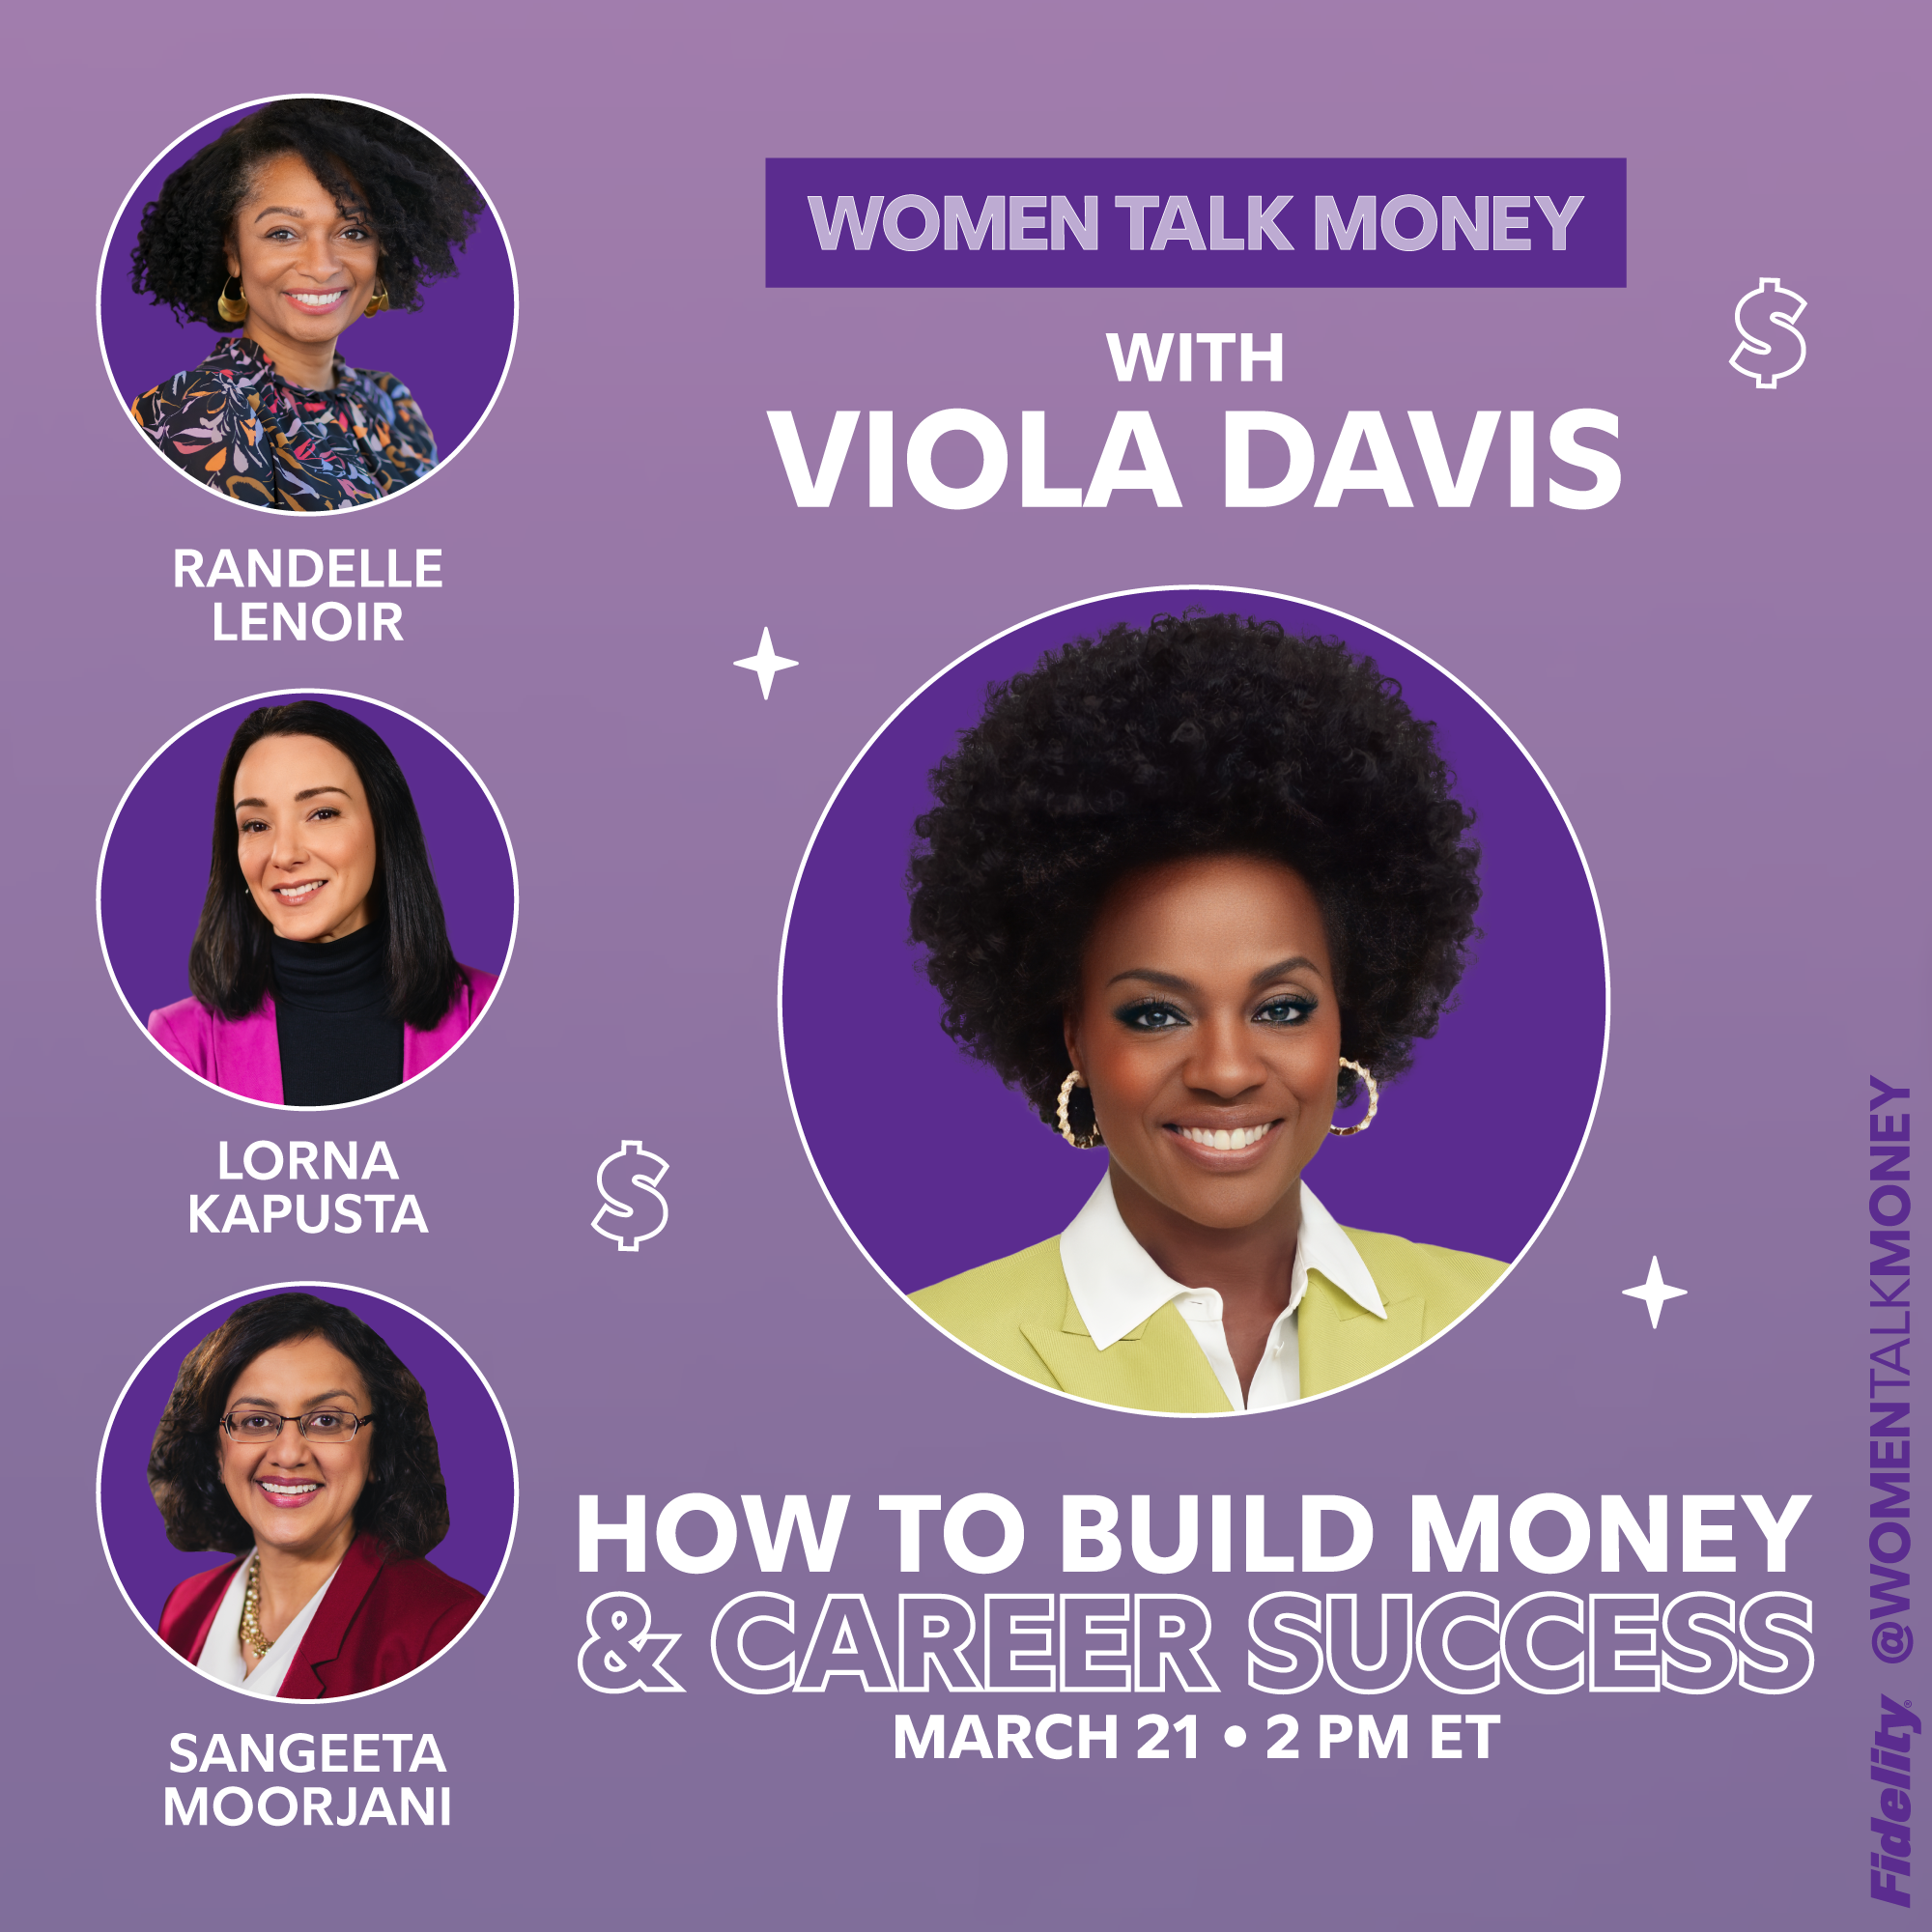 Women talk money with Viola Davis